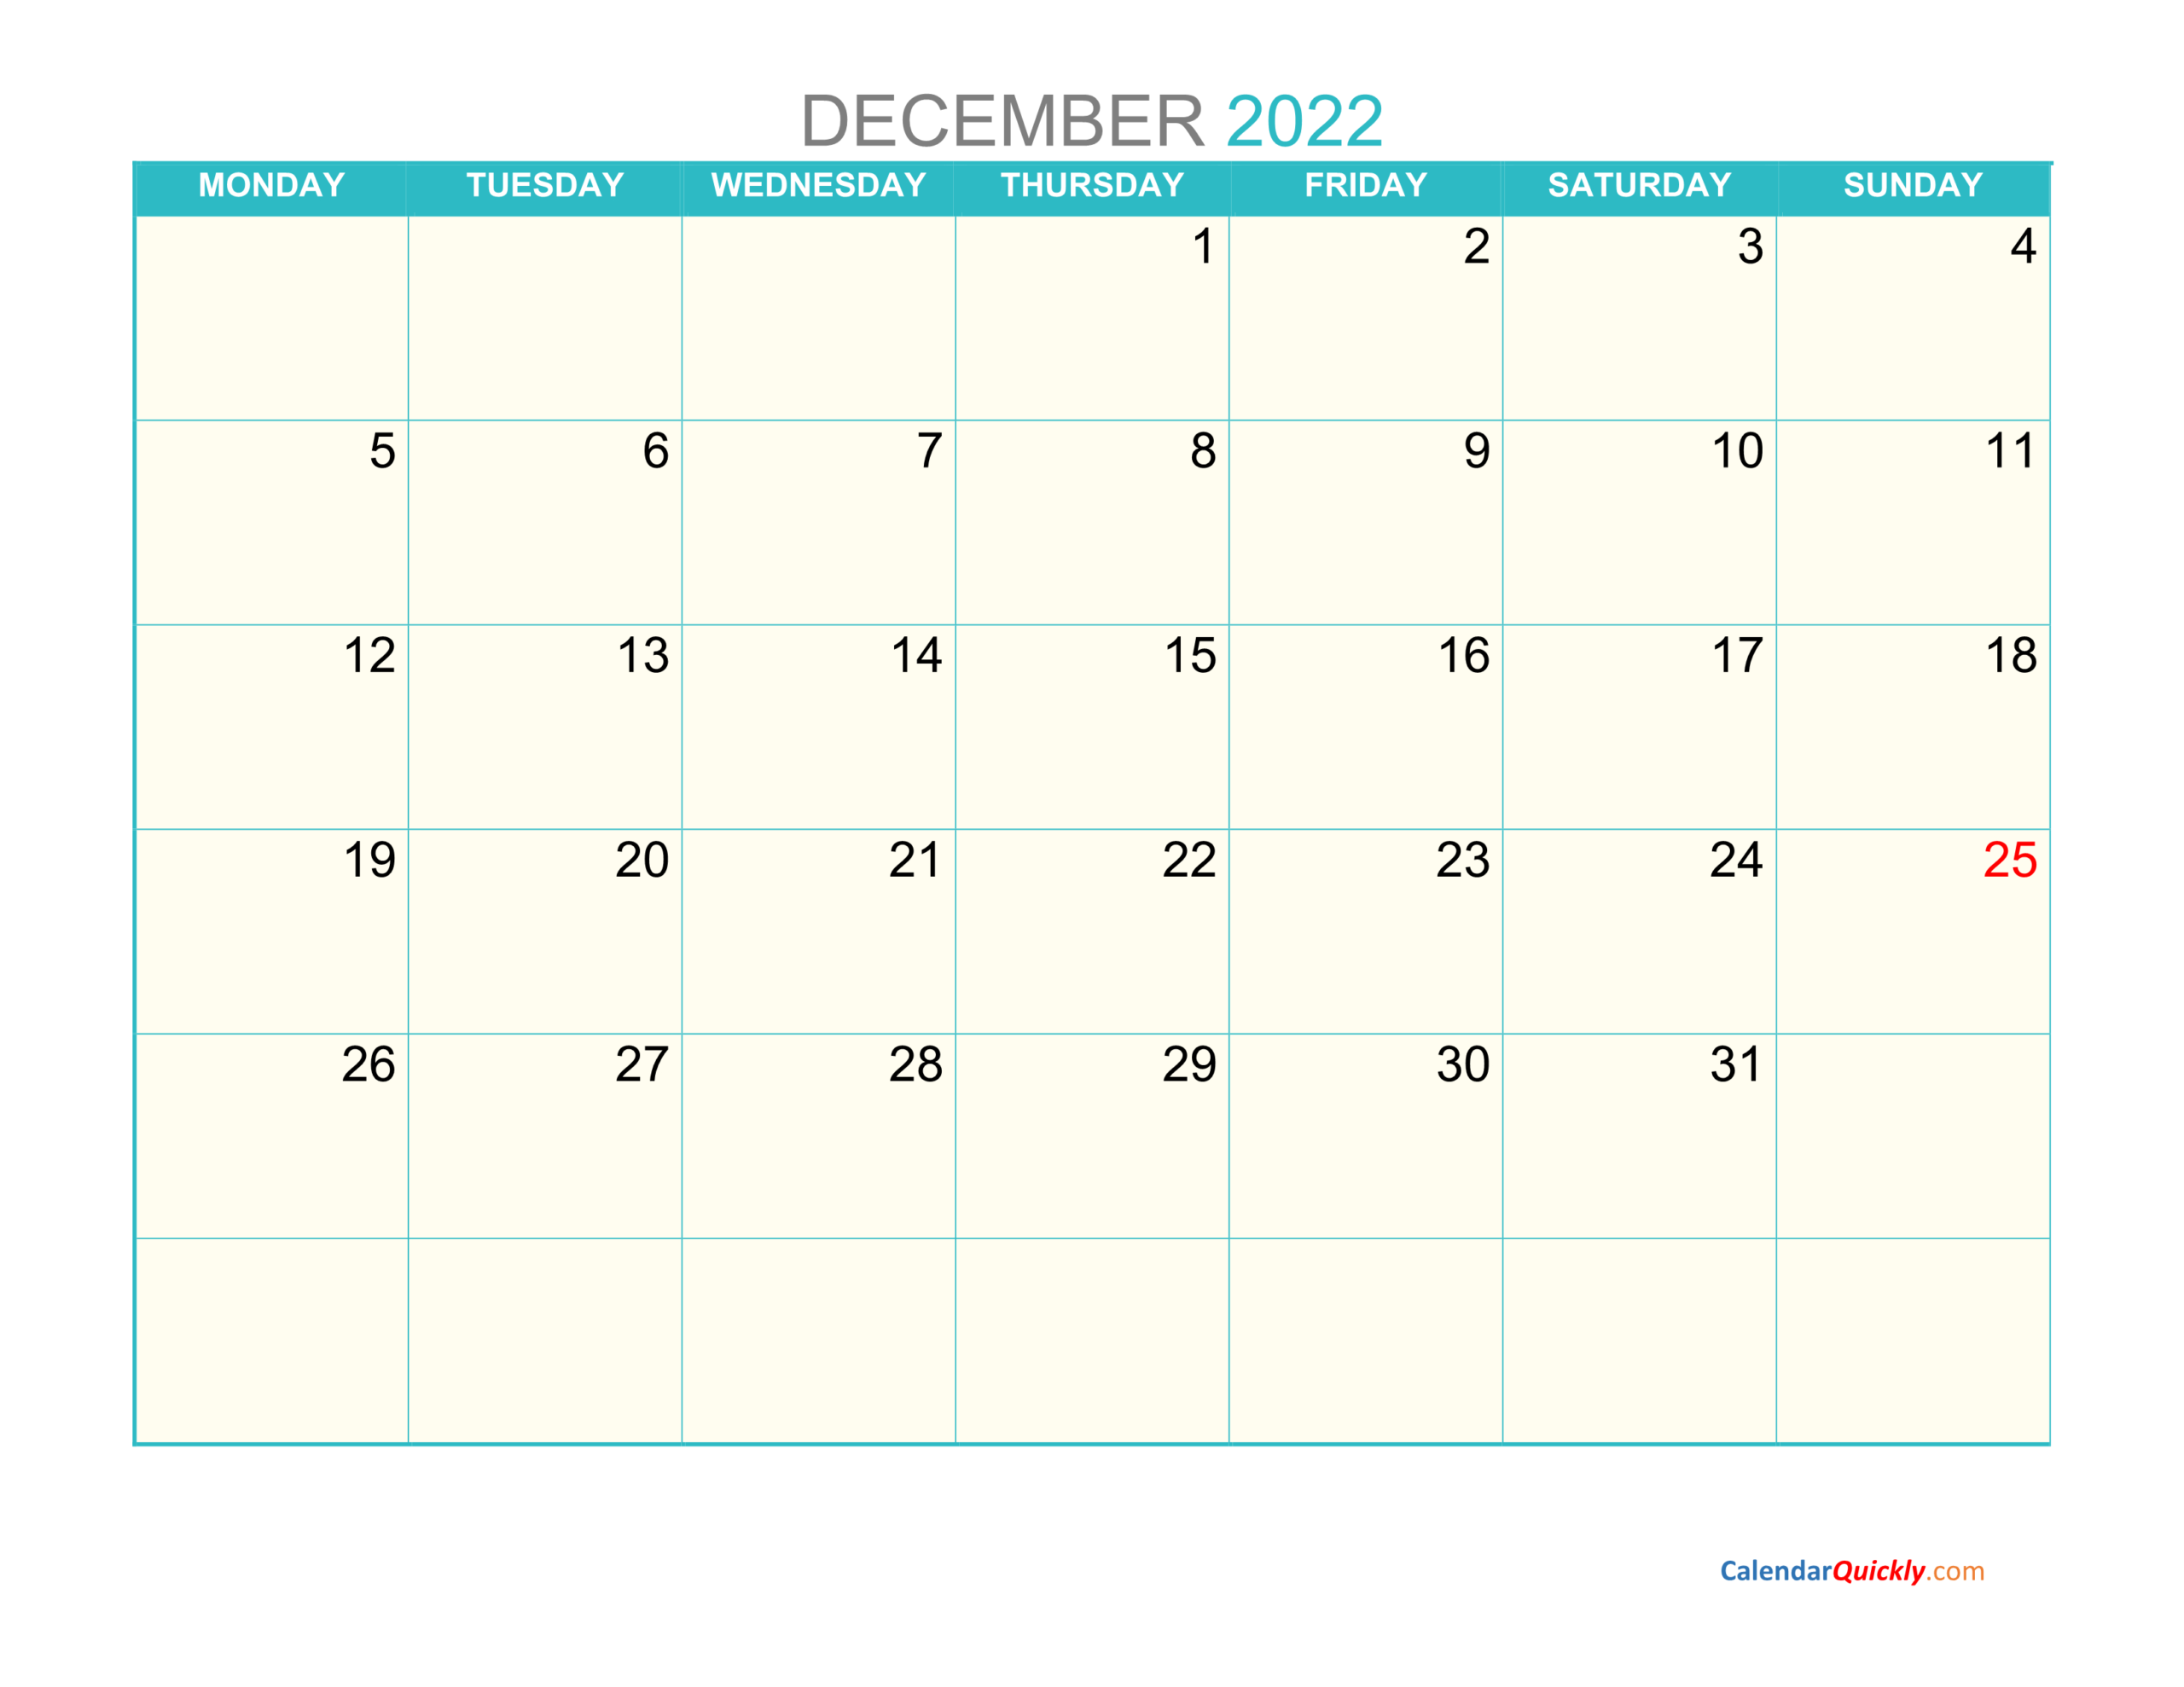 December Monday 2022 Calendar Printable | Calendar Quickly  December 2022 Calendar Lala Ramswaroop